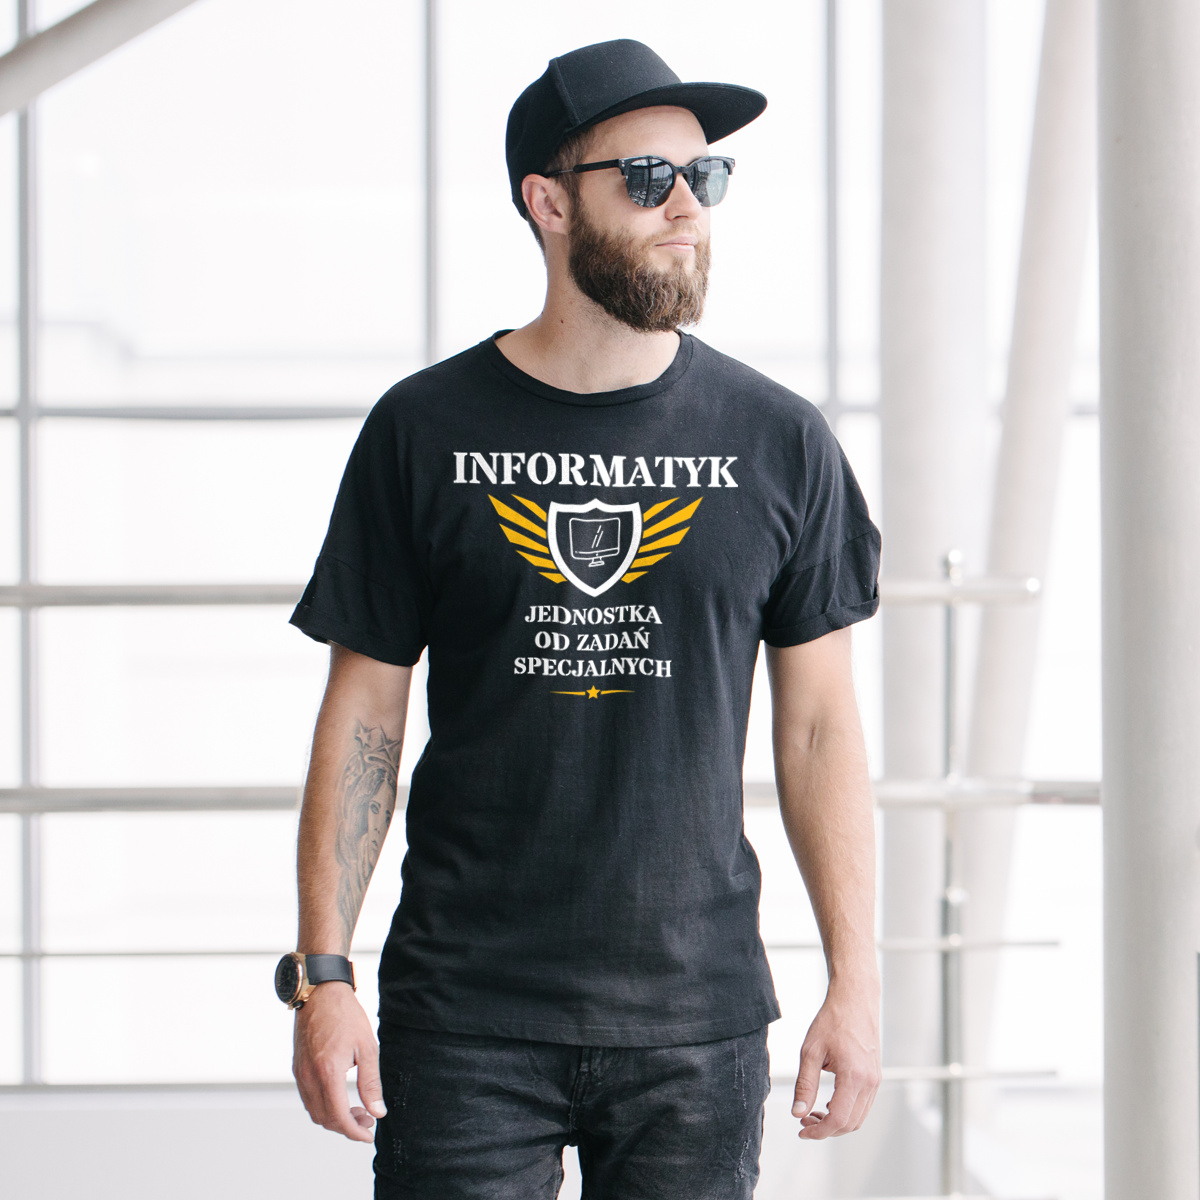 Informatyk Jednostka Od Zadań Specjalnych - Męska Koszulka Czarna